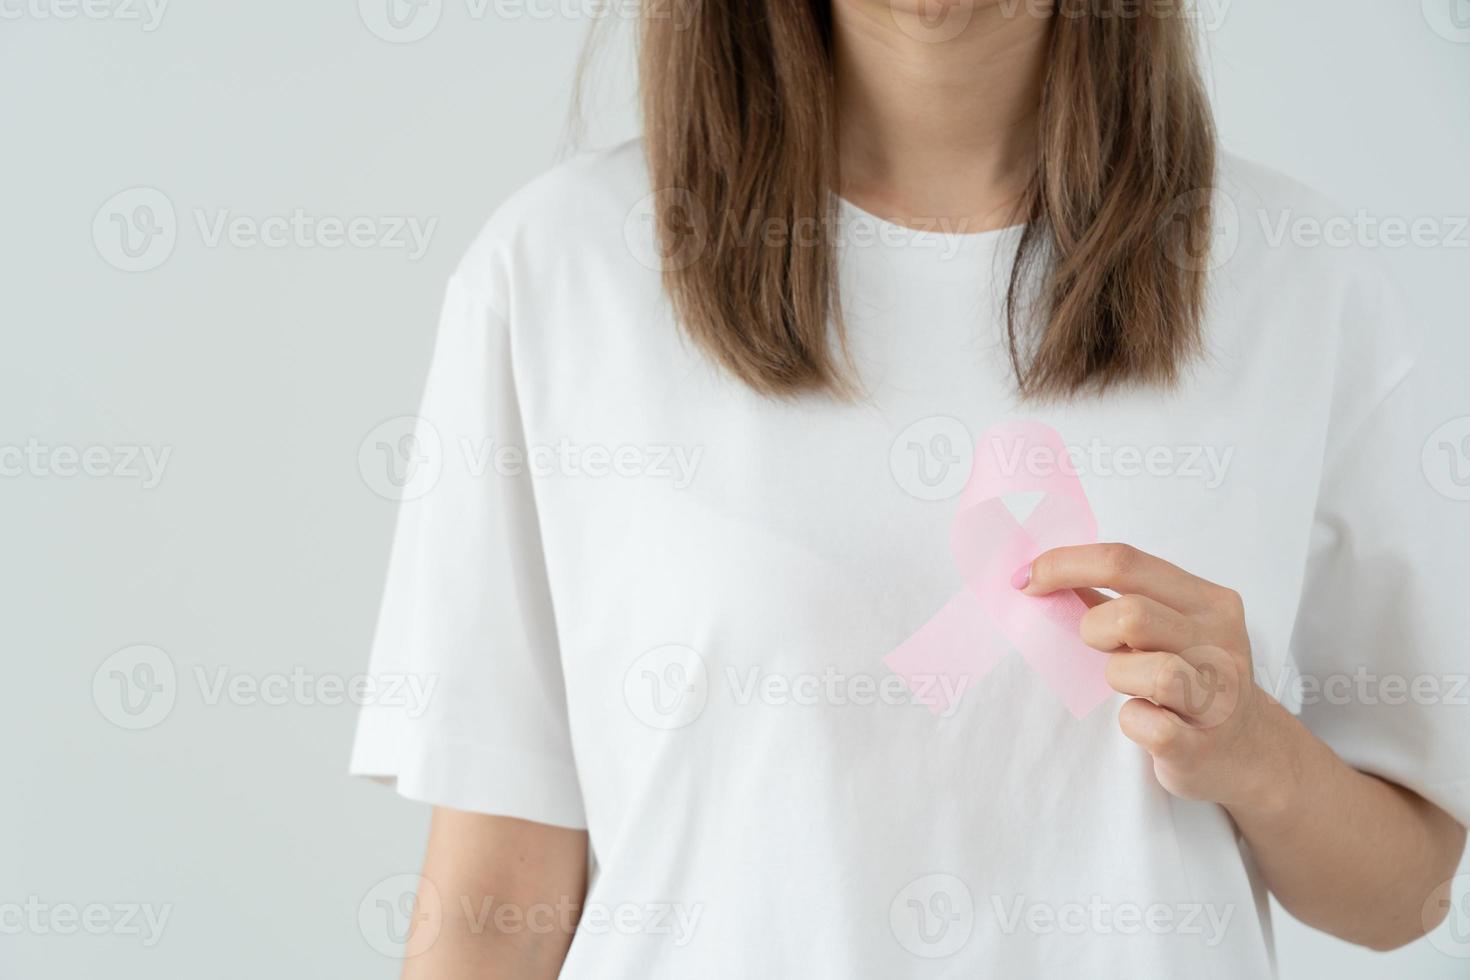 mujer sostenga la conciencia del cáncer de mama de cinta rosa. conciencia de control de salud femenina. día internacional de la mujer y día mundial contra el cáncer. cáncer de signo, simbólico, cuidado de la salud, pacientes de apoyo, diagnóstico oportuno foto